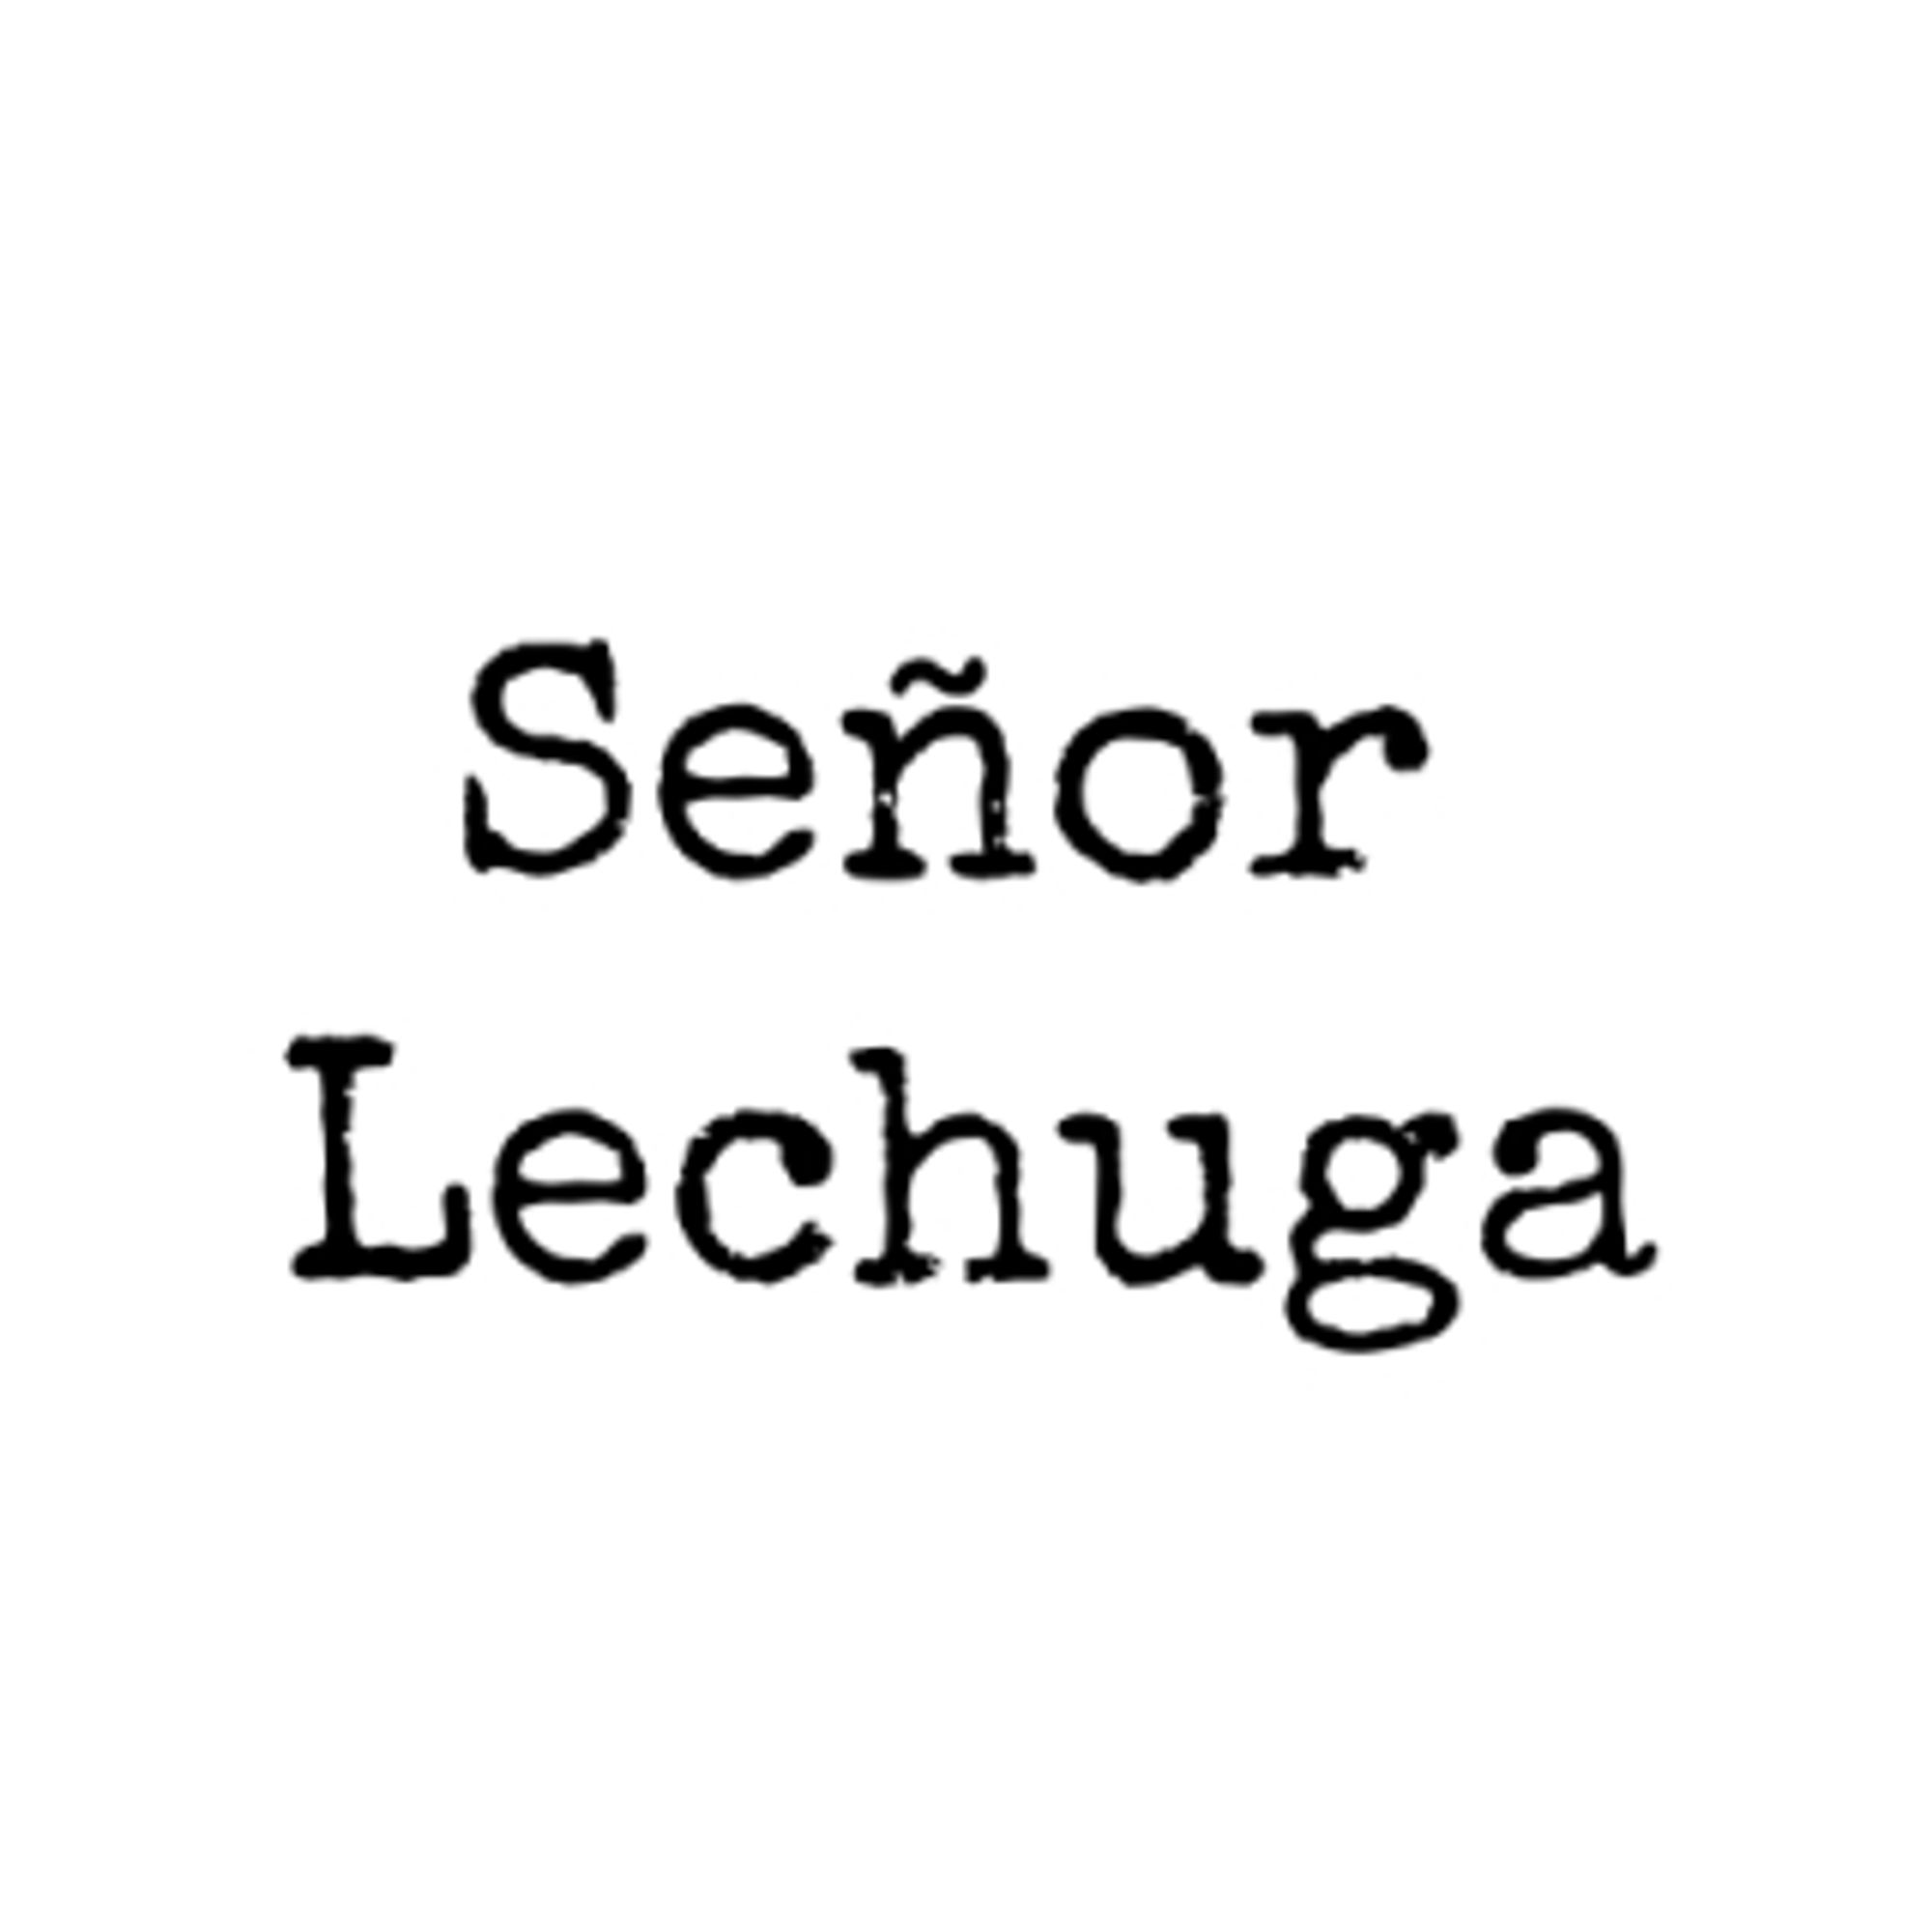 Señor Lechuga